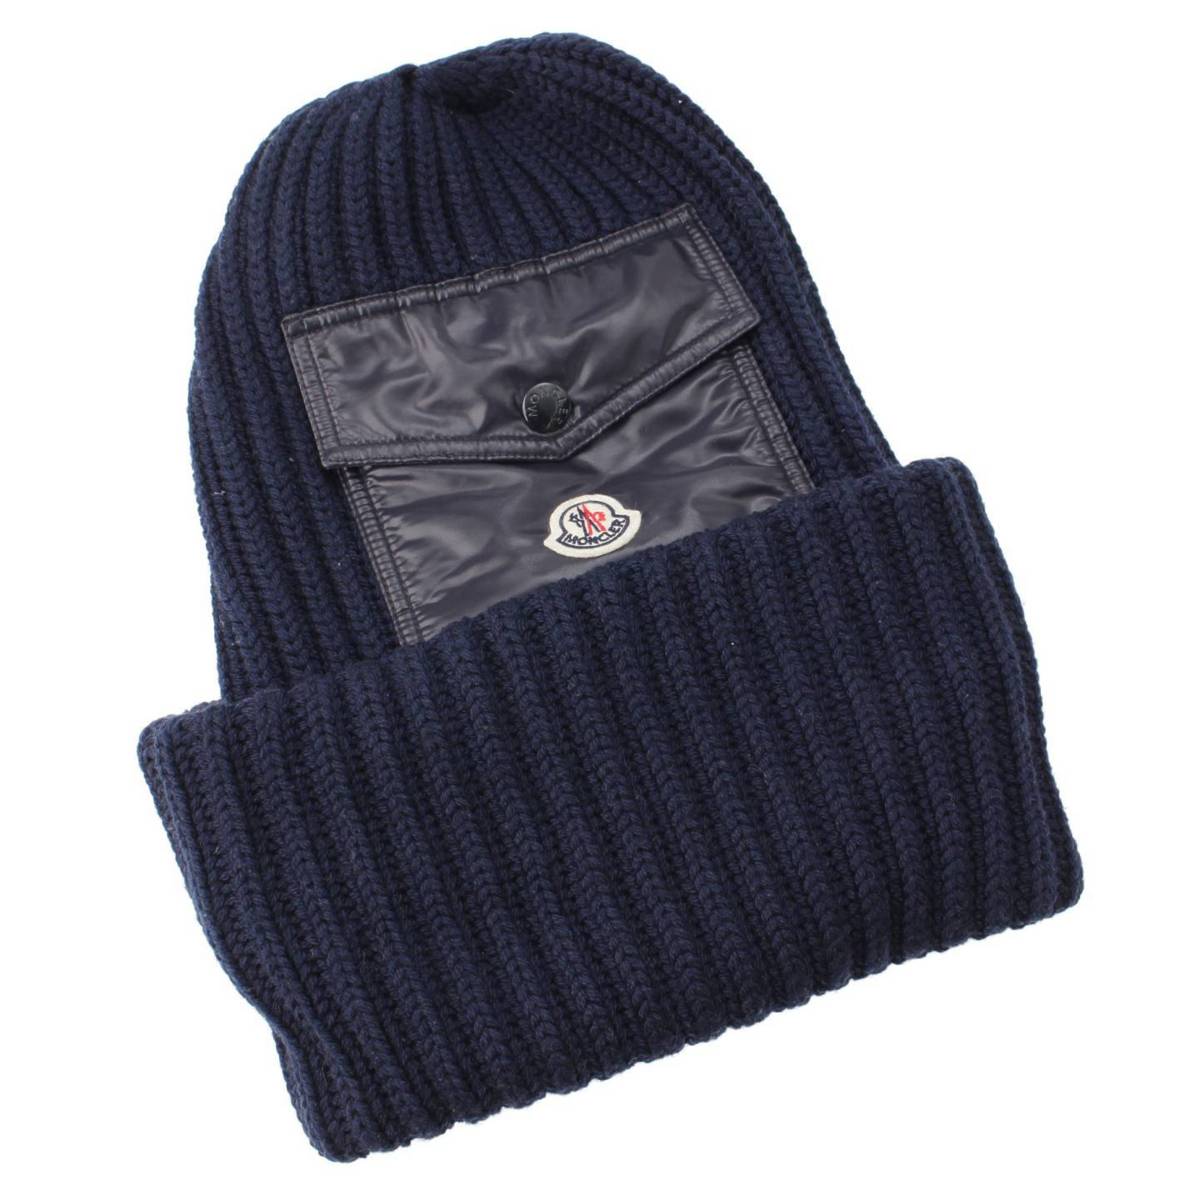 モンクレール(Moncler) ロゴ ポケット付き ニット帽 ニットキャップ